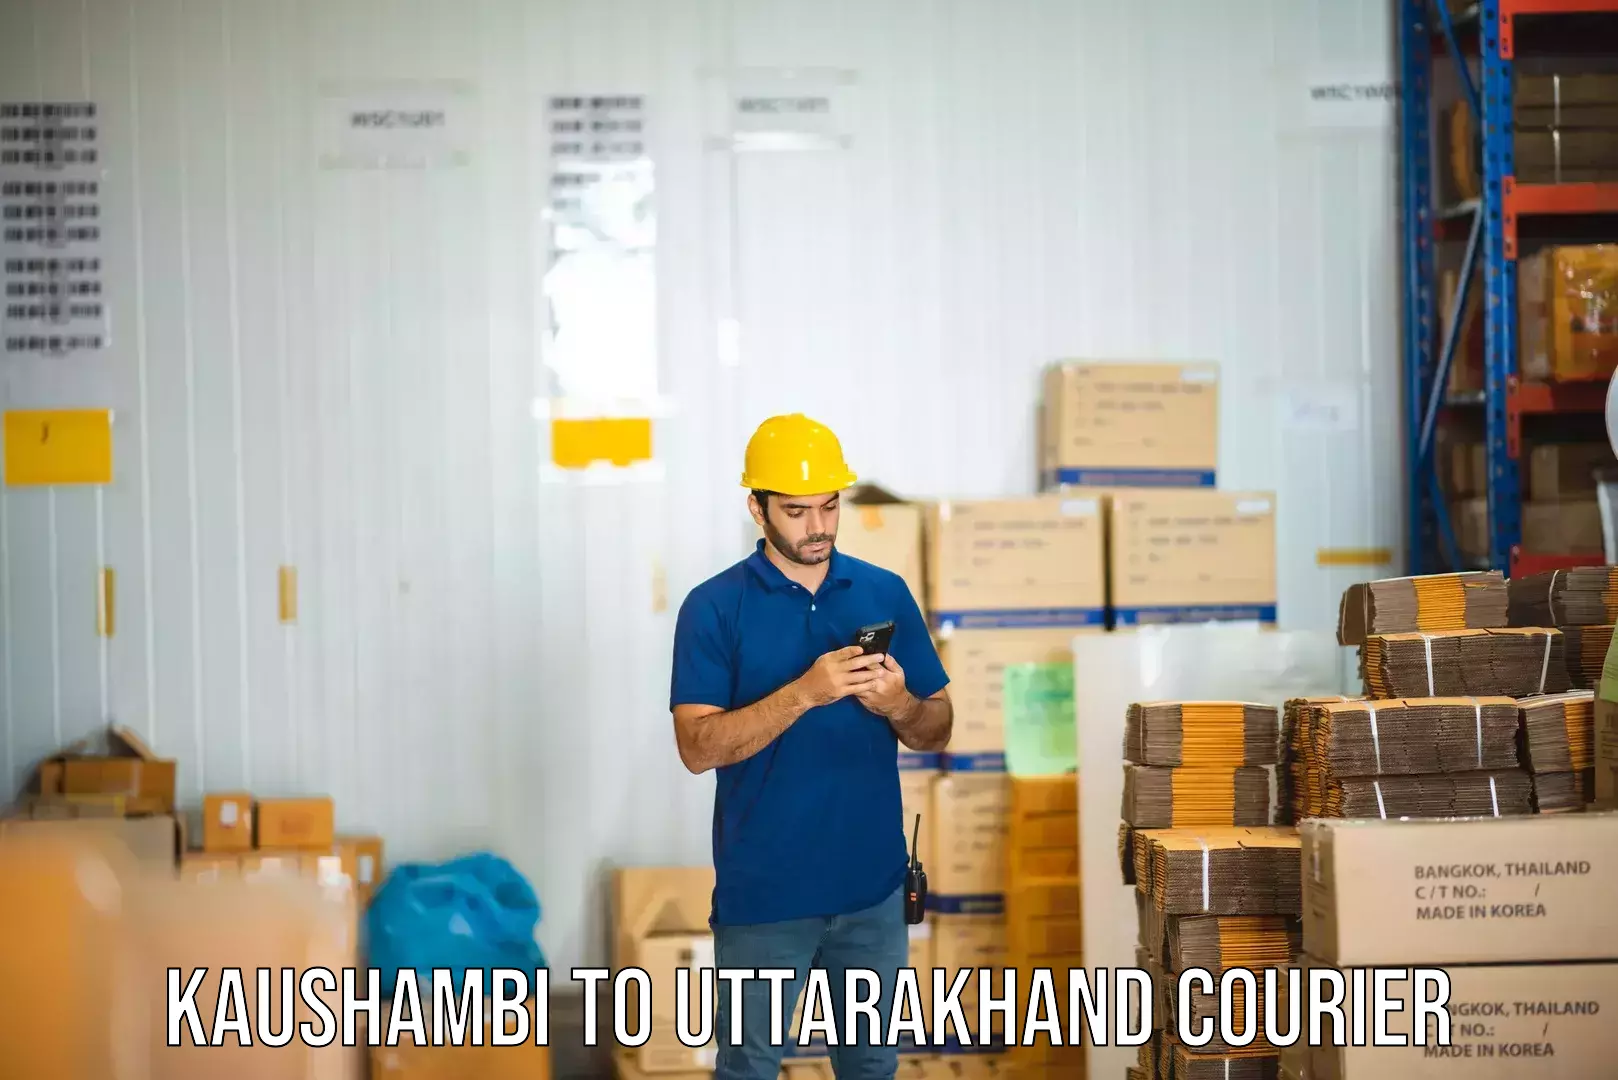 Courier service partnerships Kaushambi to Uttarakhand